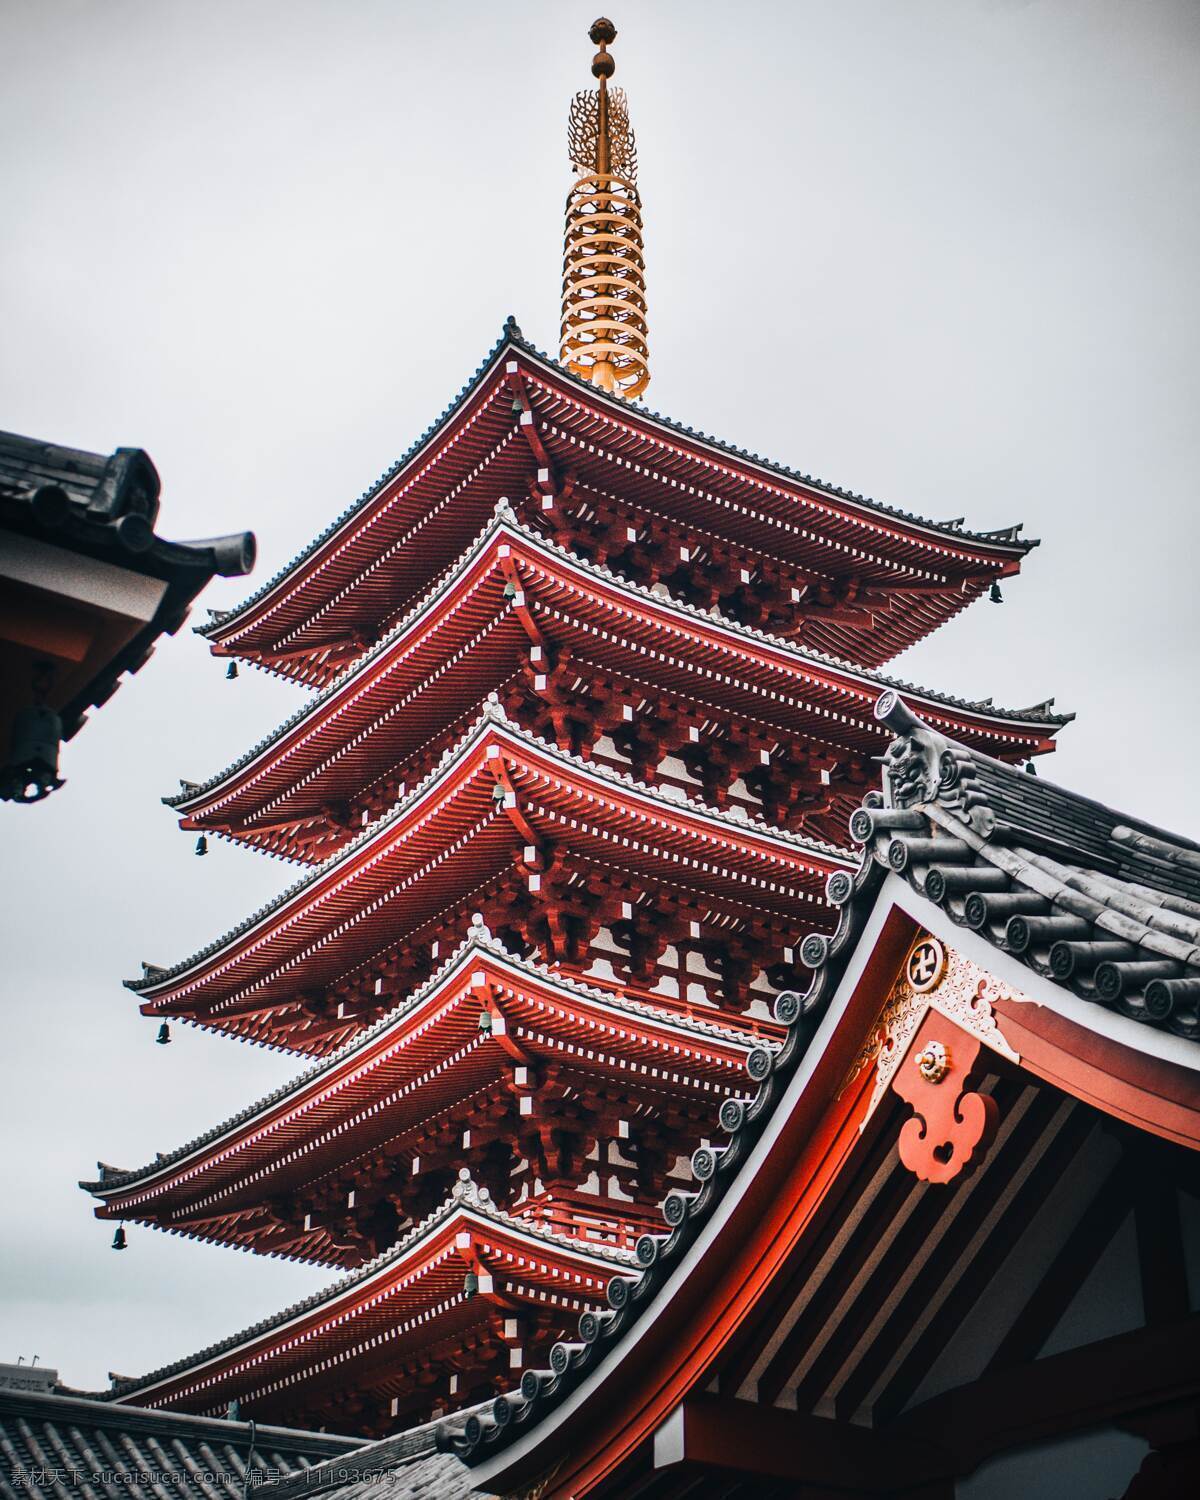 日本建筑 寺庙 神社 日本 霓虹国 11区 佛 僧侣 建筑设计 地标 自然景观 建筑景观